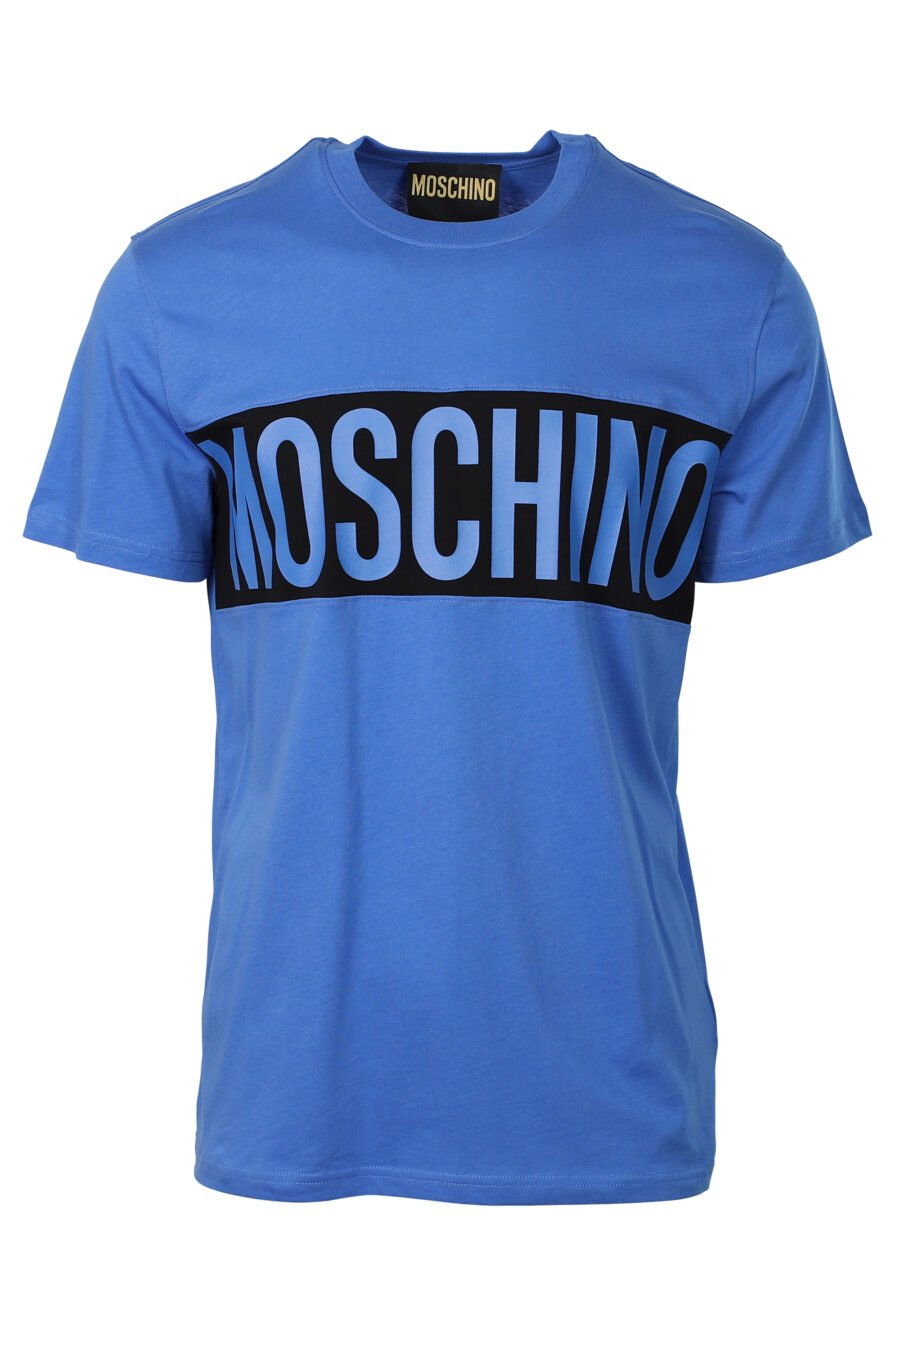 Blaues T-Shirt mit schwarzem Logo-Streifen - 667112834116